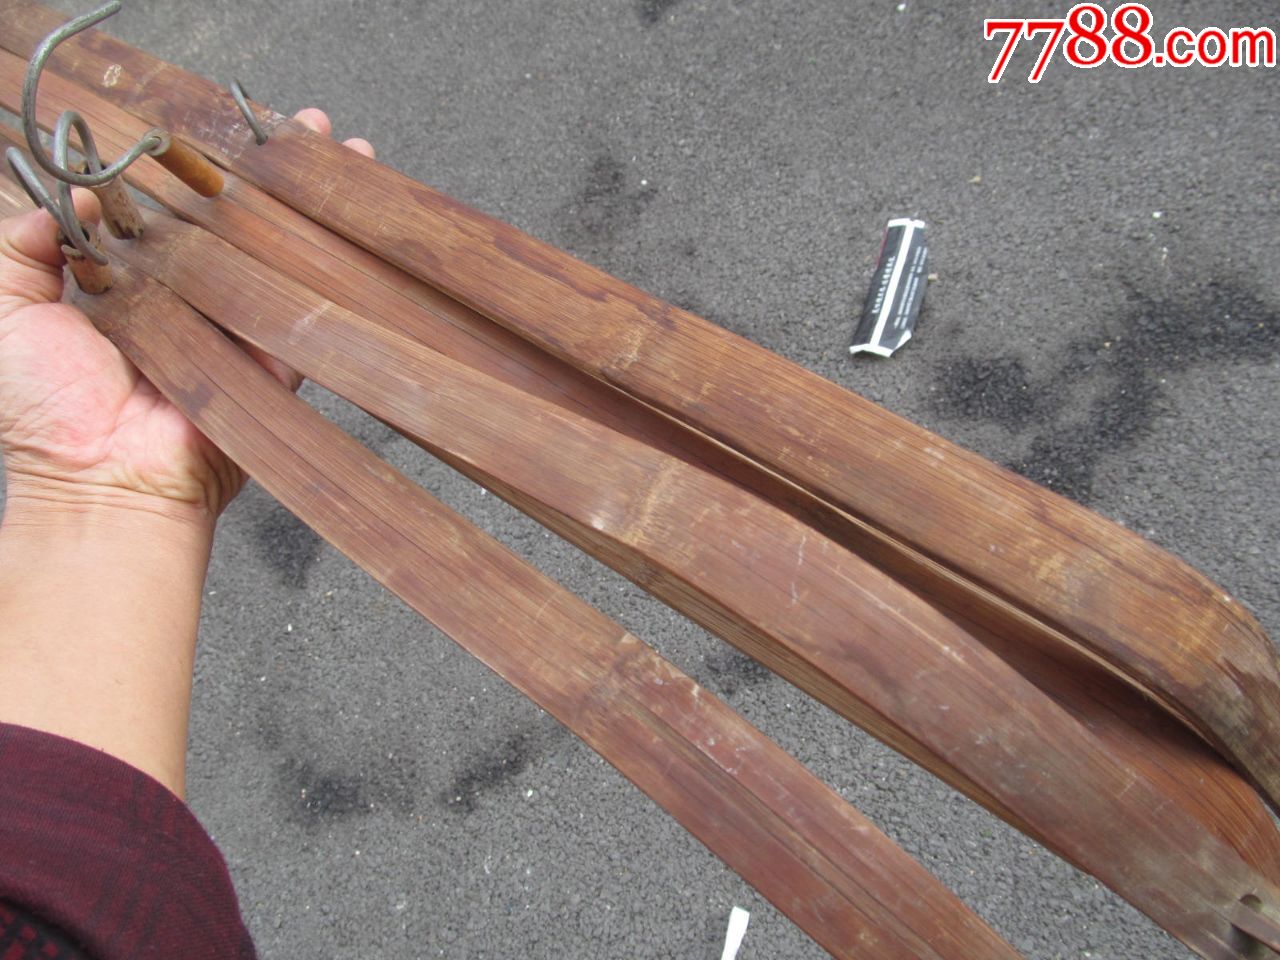 五六十年前的特大竹子衣架4个,全长近90厘米,特少见,接品有少钉,品相